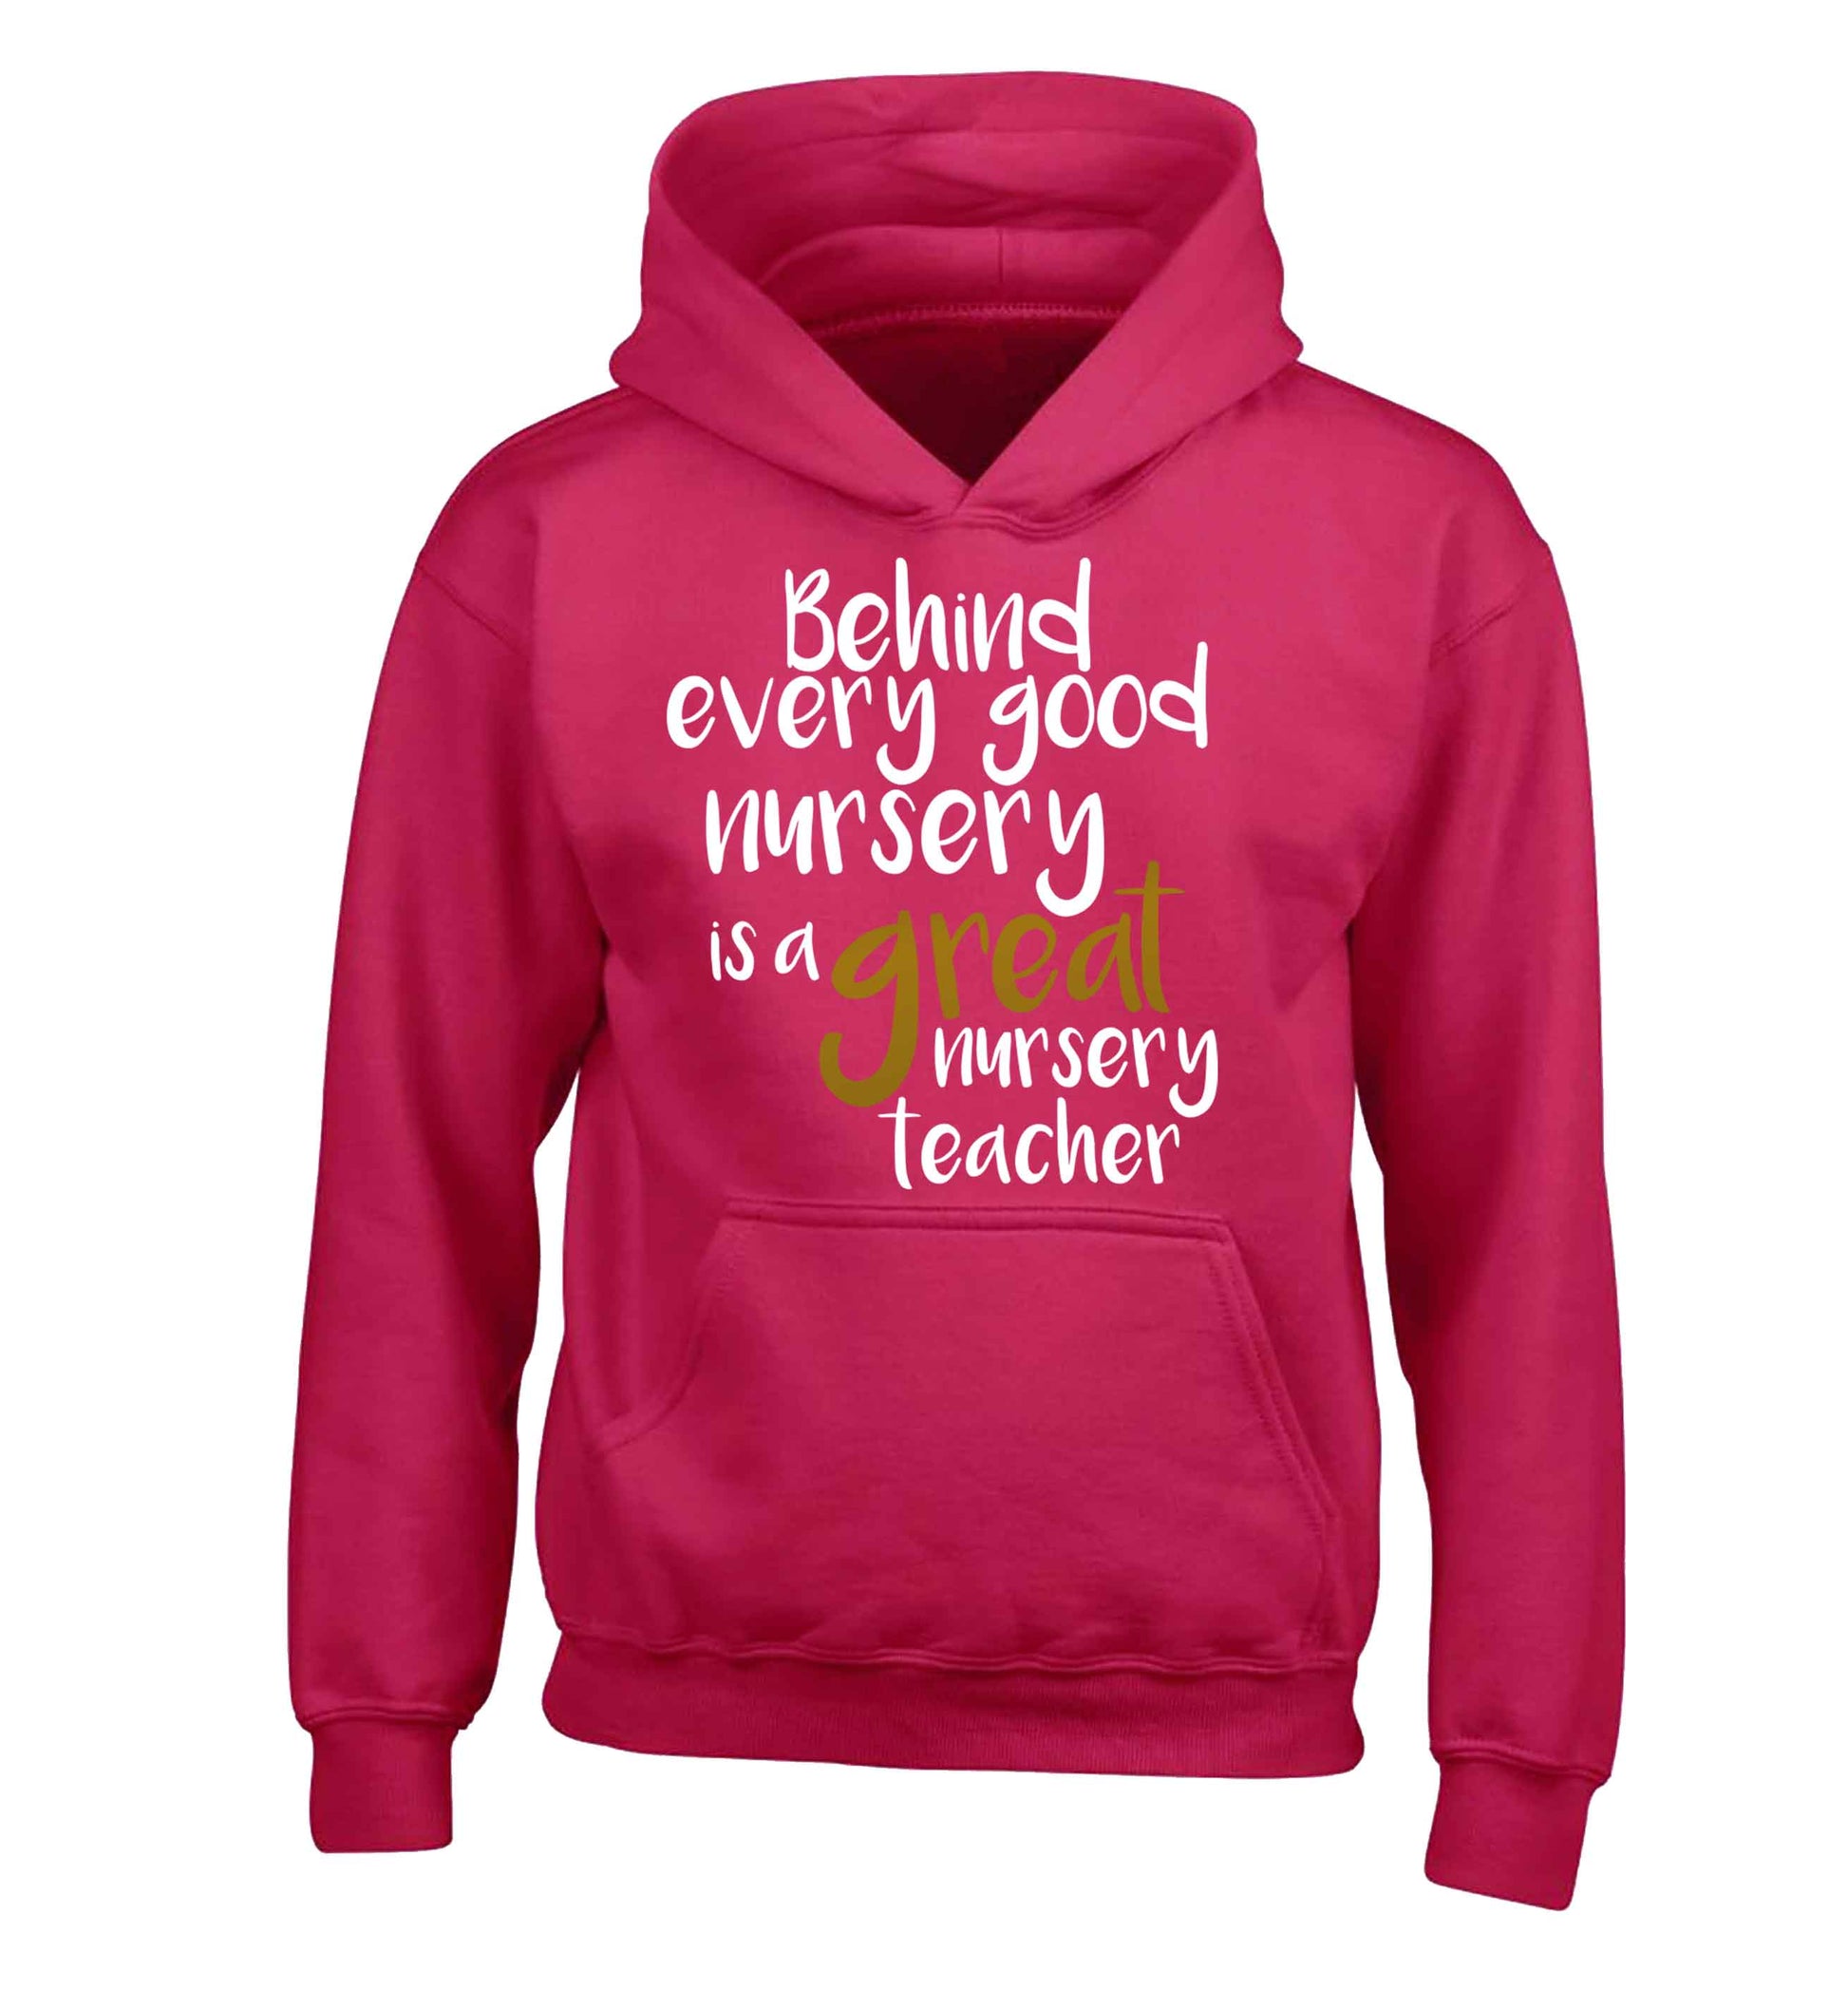 Behind every good nursery is a great nursery teacher children's pink hoodie 12-13 Years